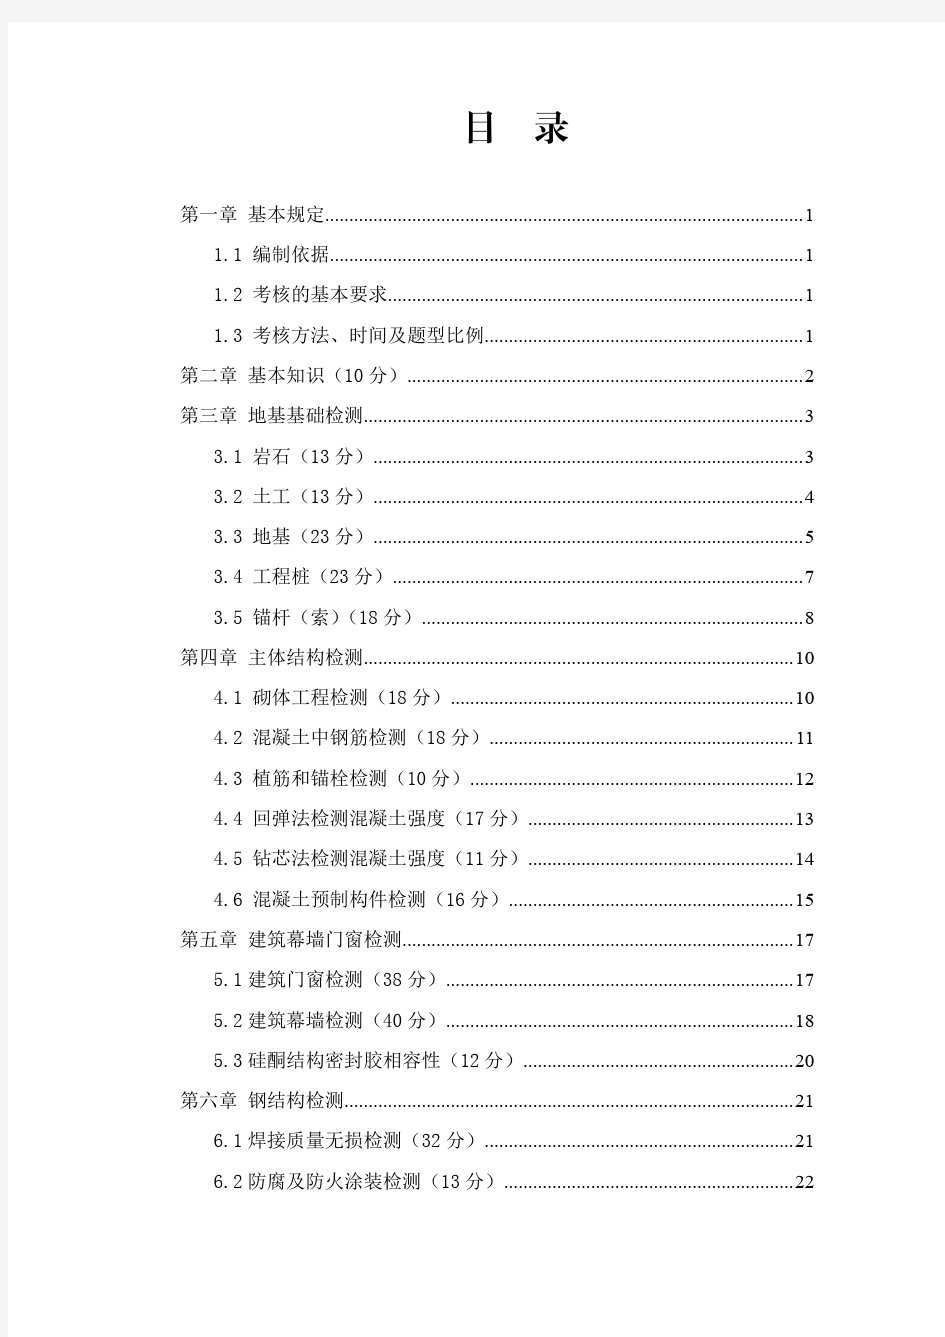 重庆市建设工程质量检测人员考试大纲(2020版)